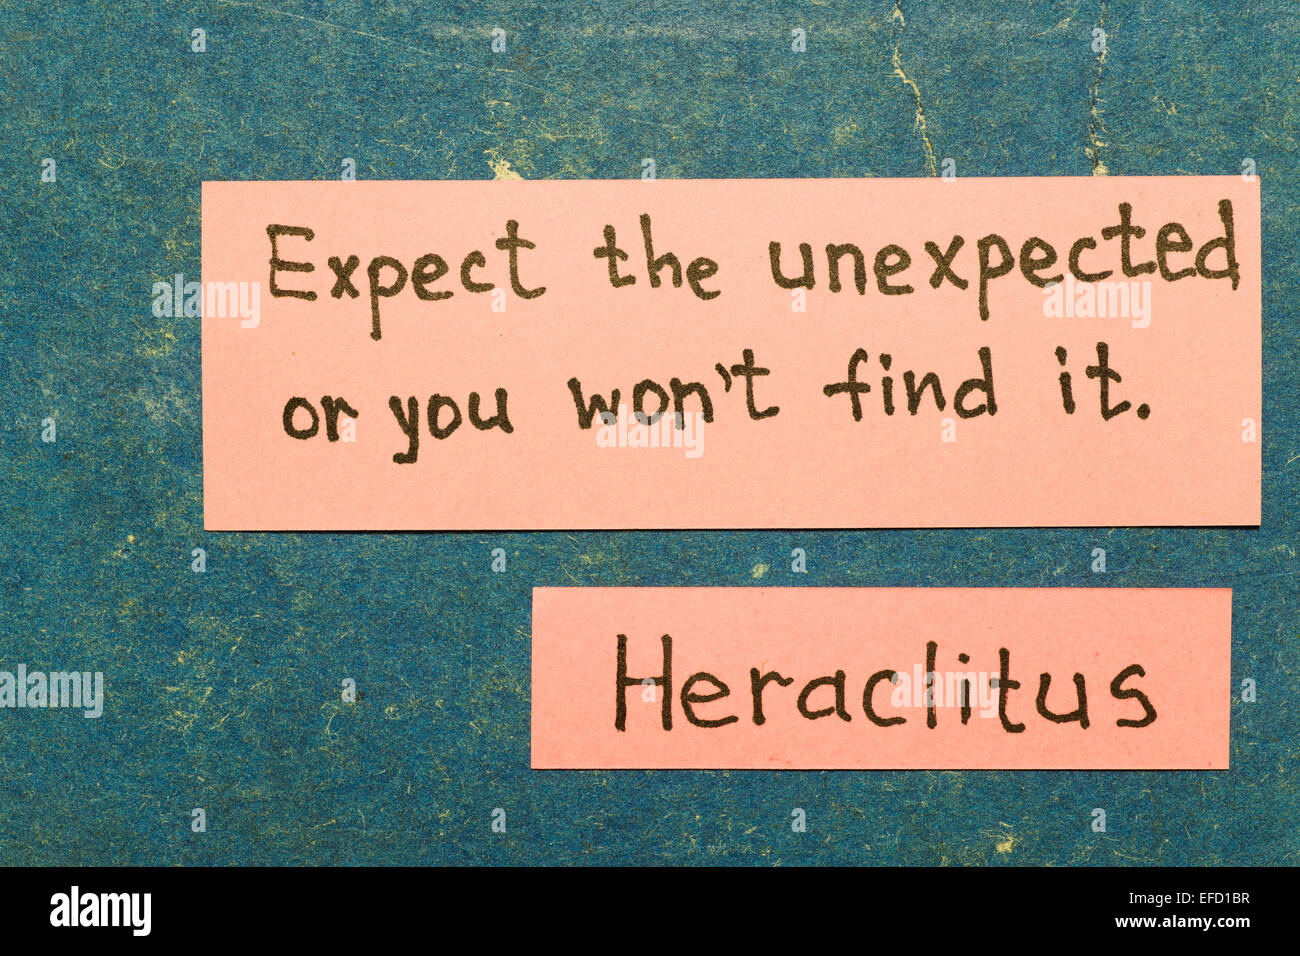 erwarten Sie das unerwartete, oder Sie finden es - nicht der griechische Philosoph Heraclitus Zitat Interpretation mit rosa Hinweise zur vinta Stockfoto